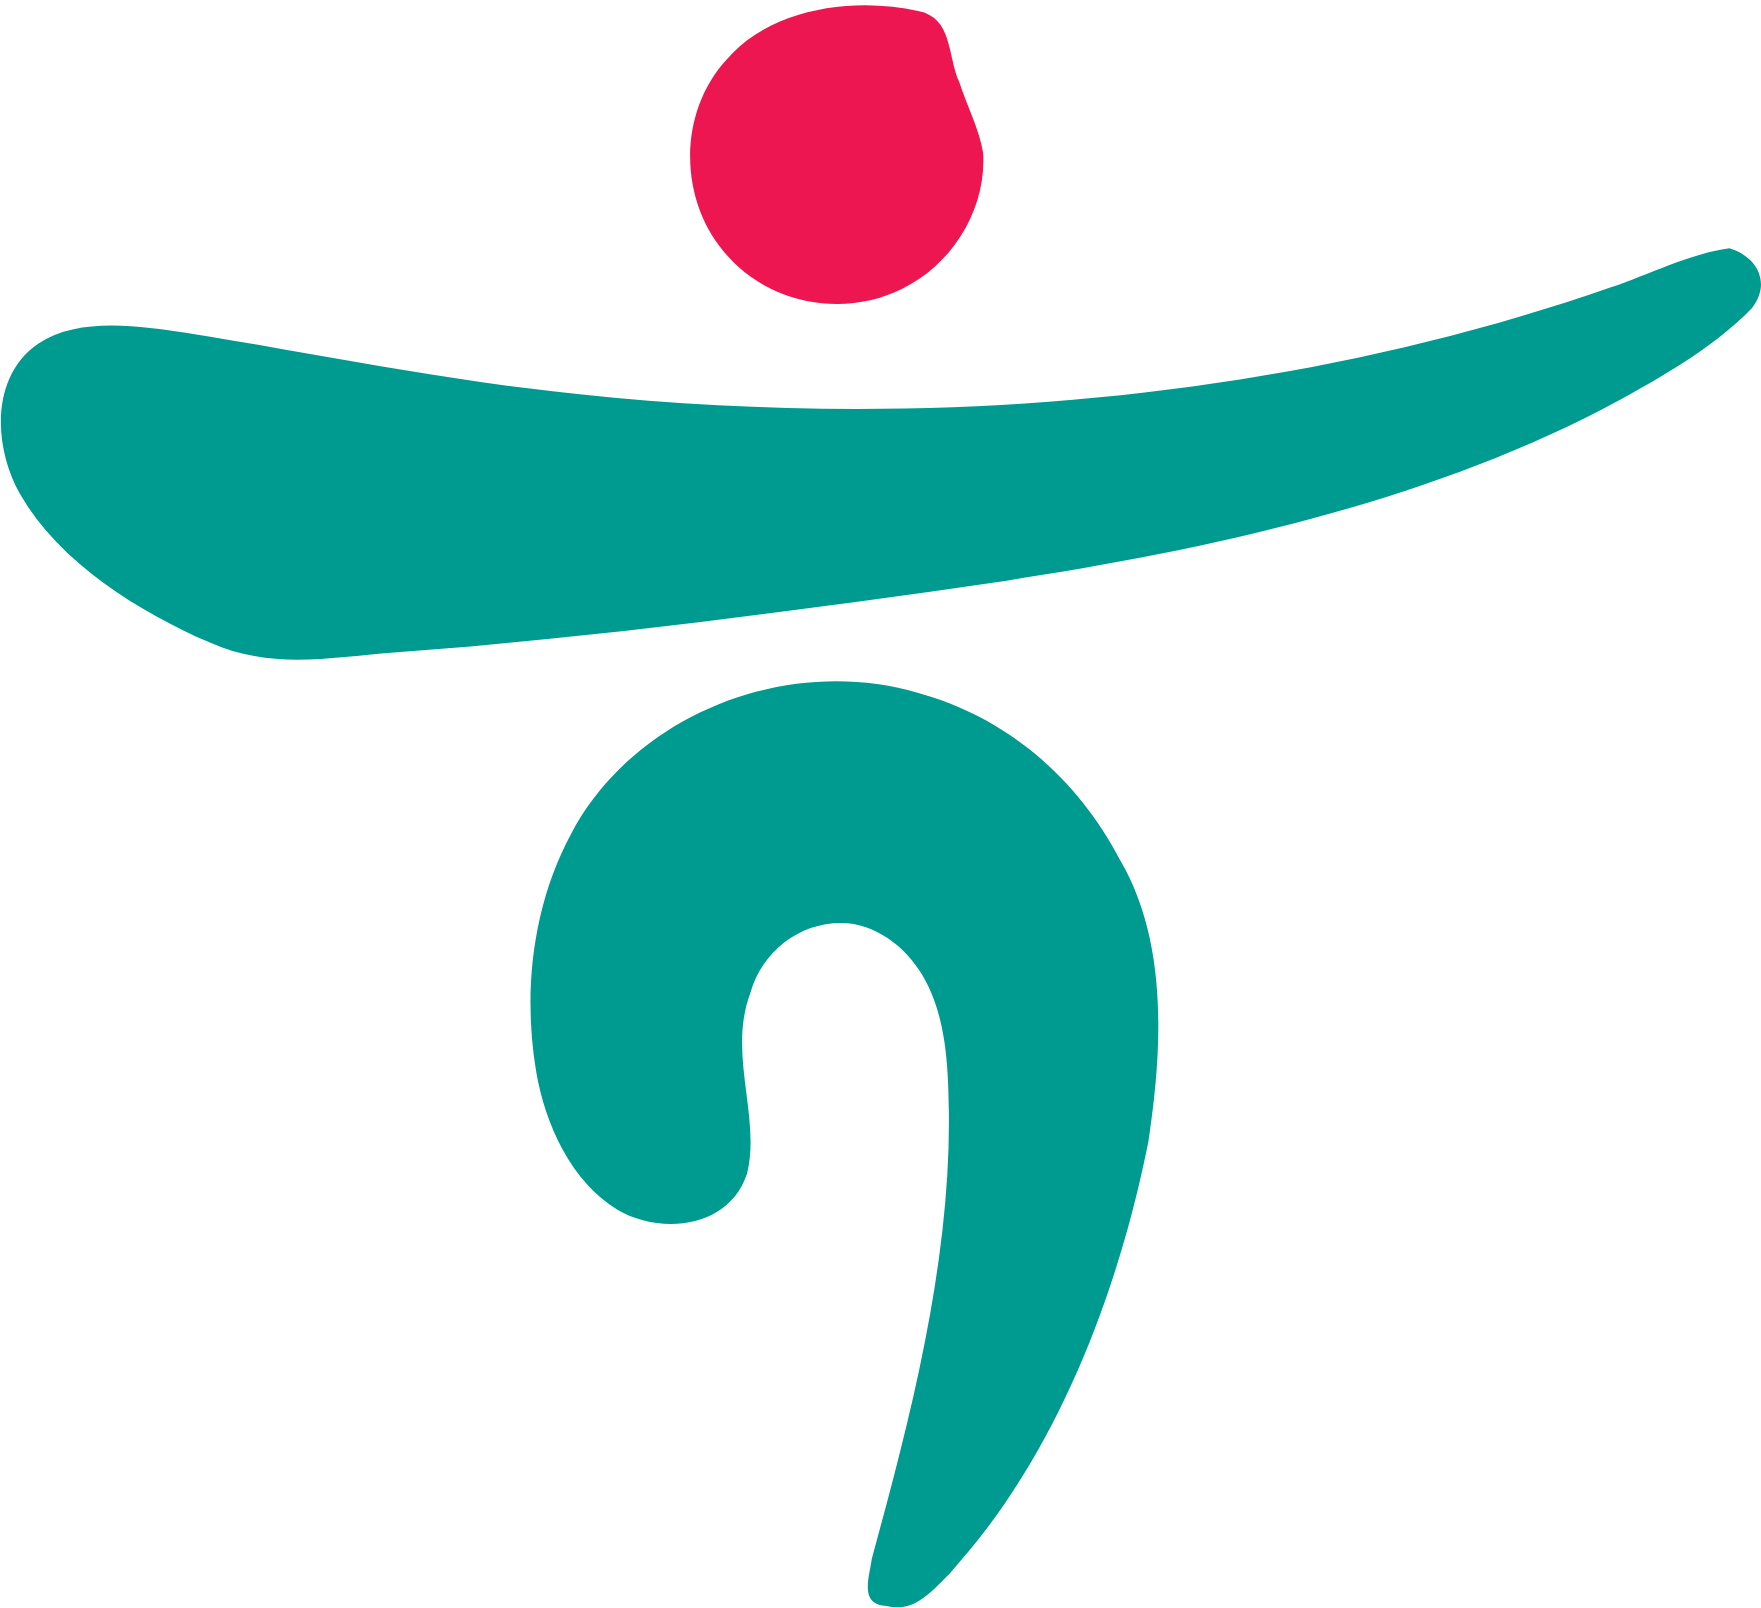 Hana Financial Group logo (PNG transparent)